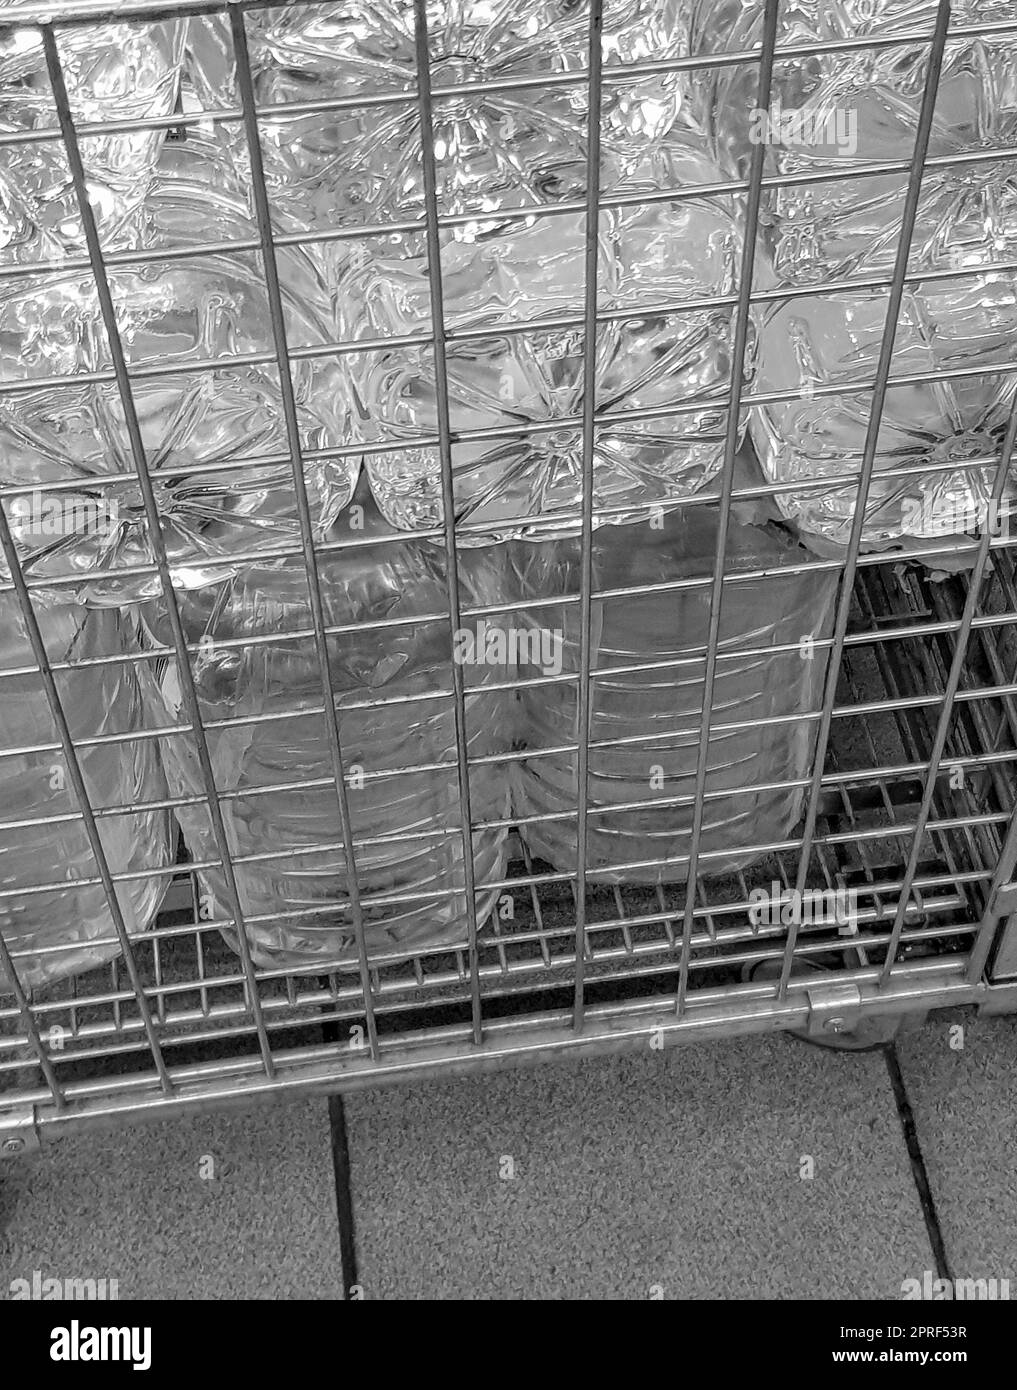 Lagerung und Transport von großen Plastikflaschen für sauberes Trinkwasser in einem Behälter mit Metallrost, Nahaufnahme Stockfoto